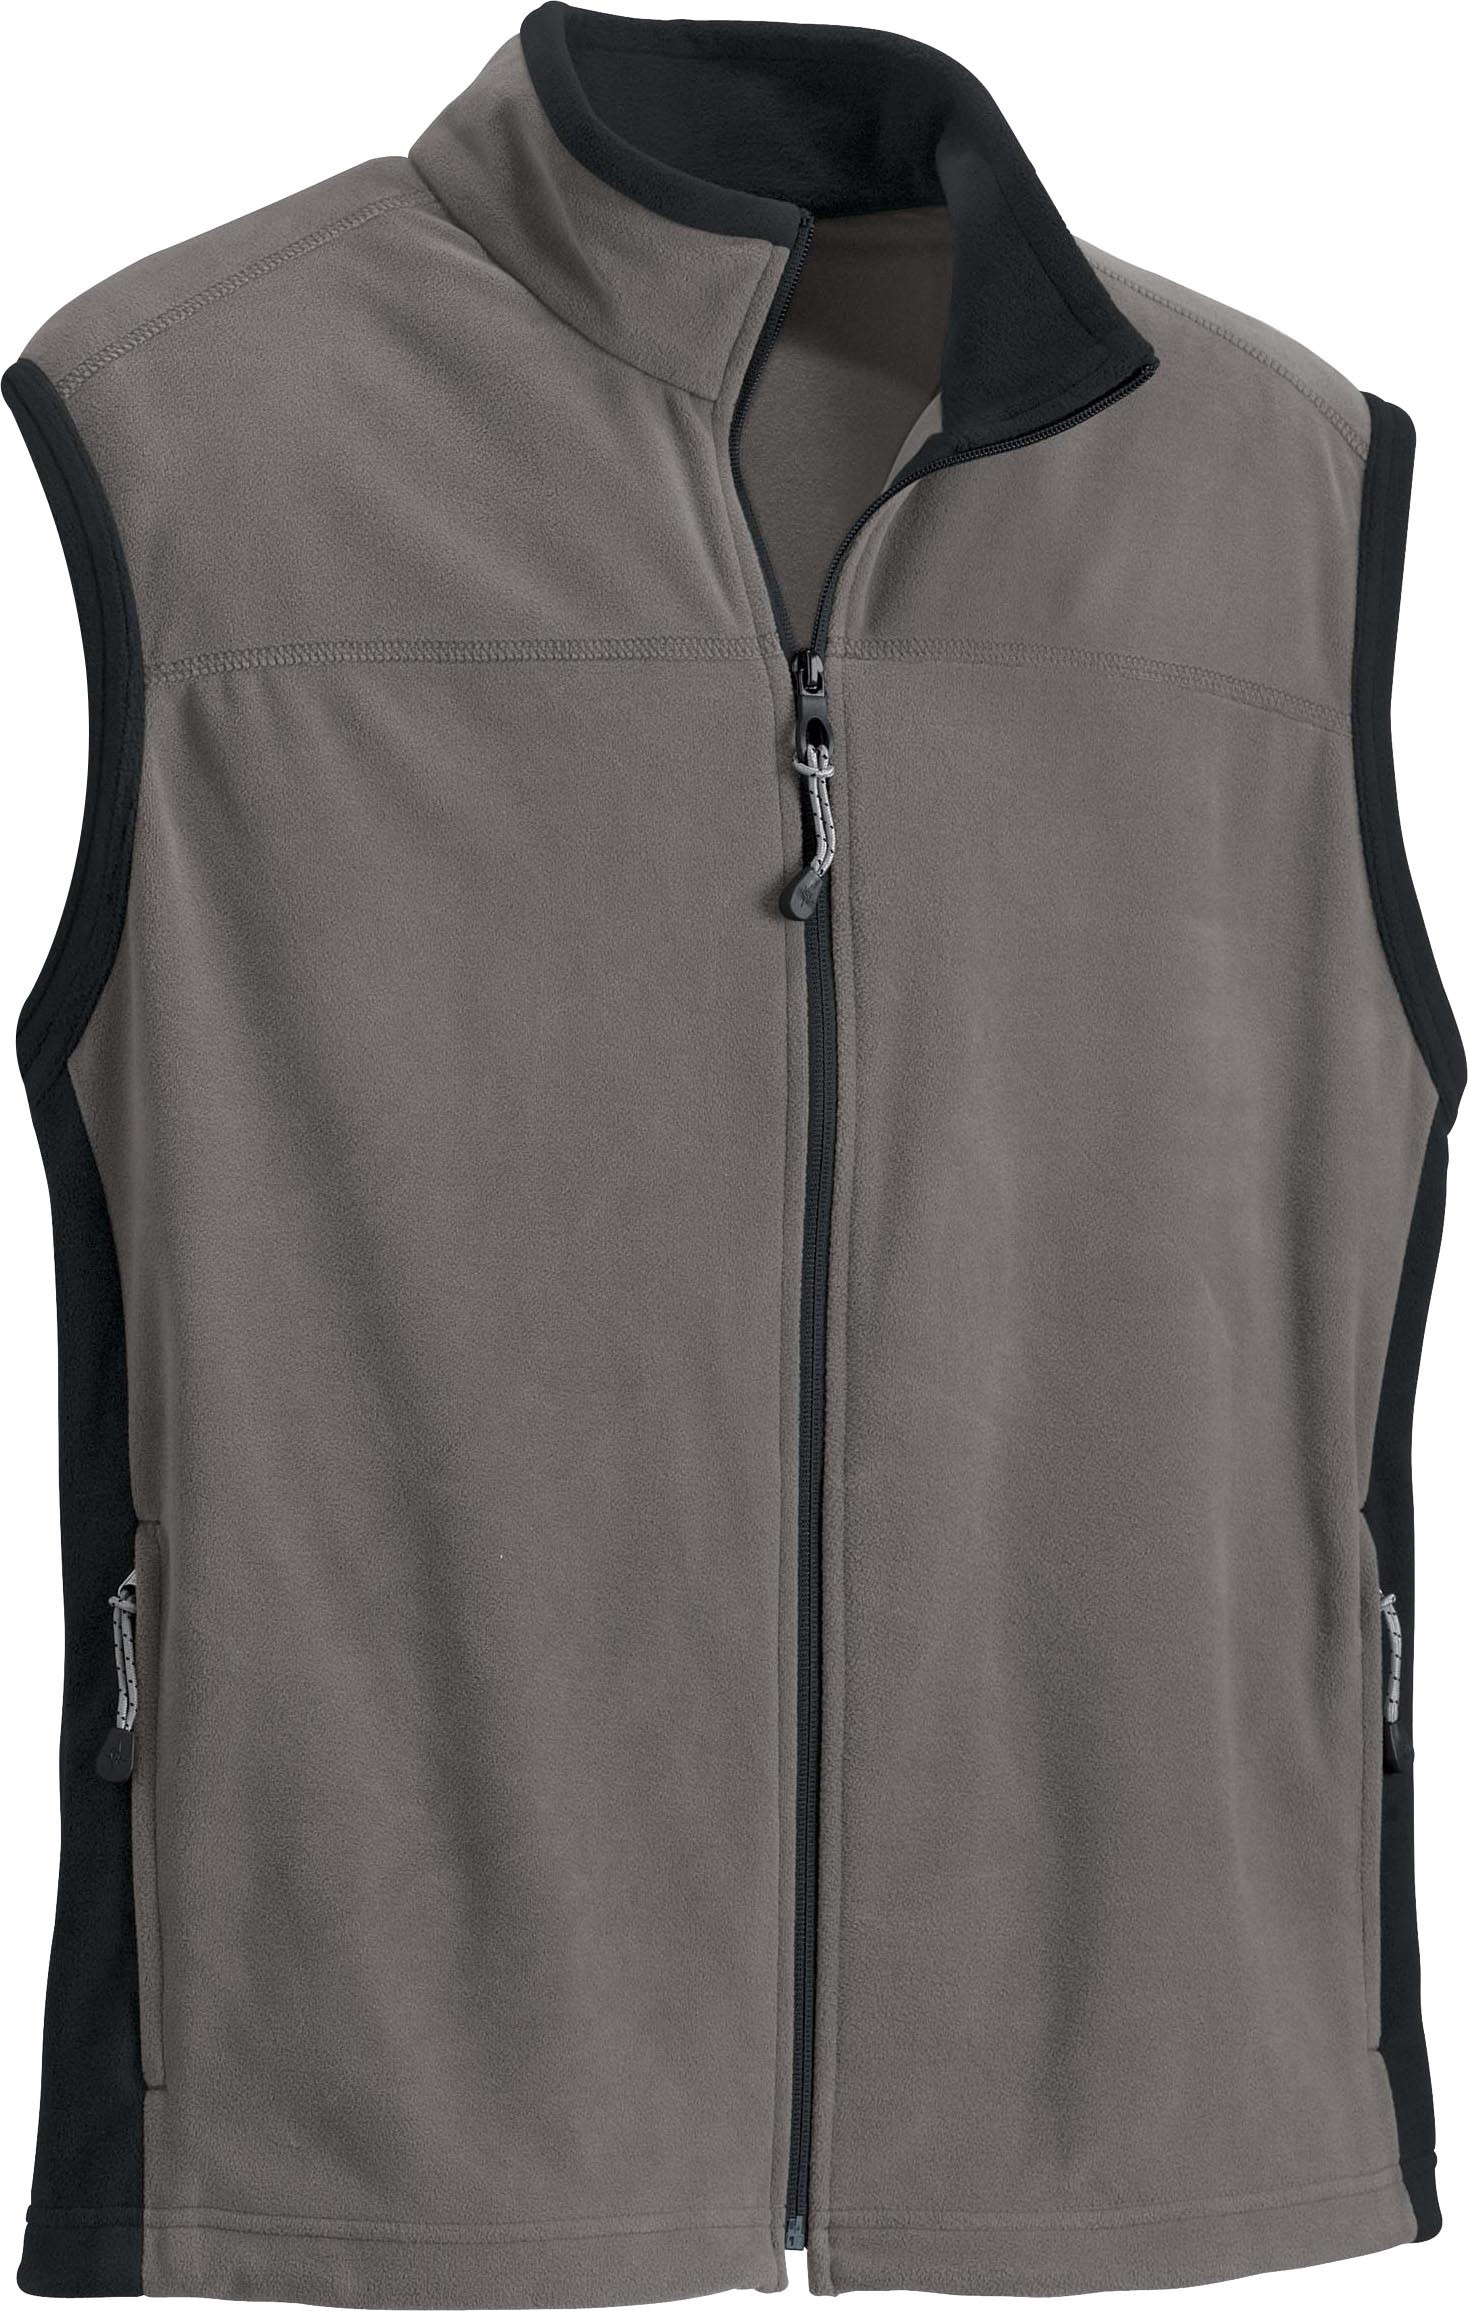 ash city vests 88114 - men"s microfleece vest